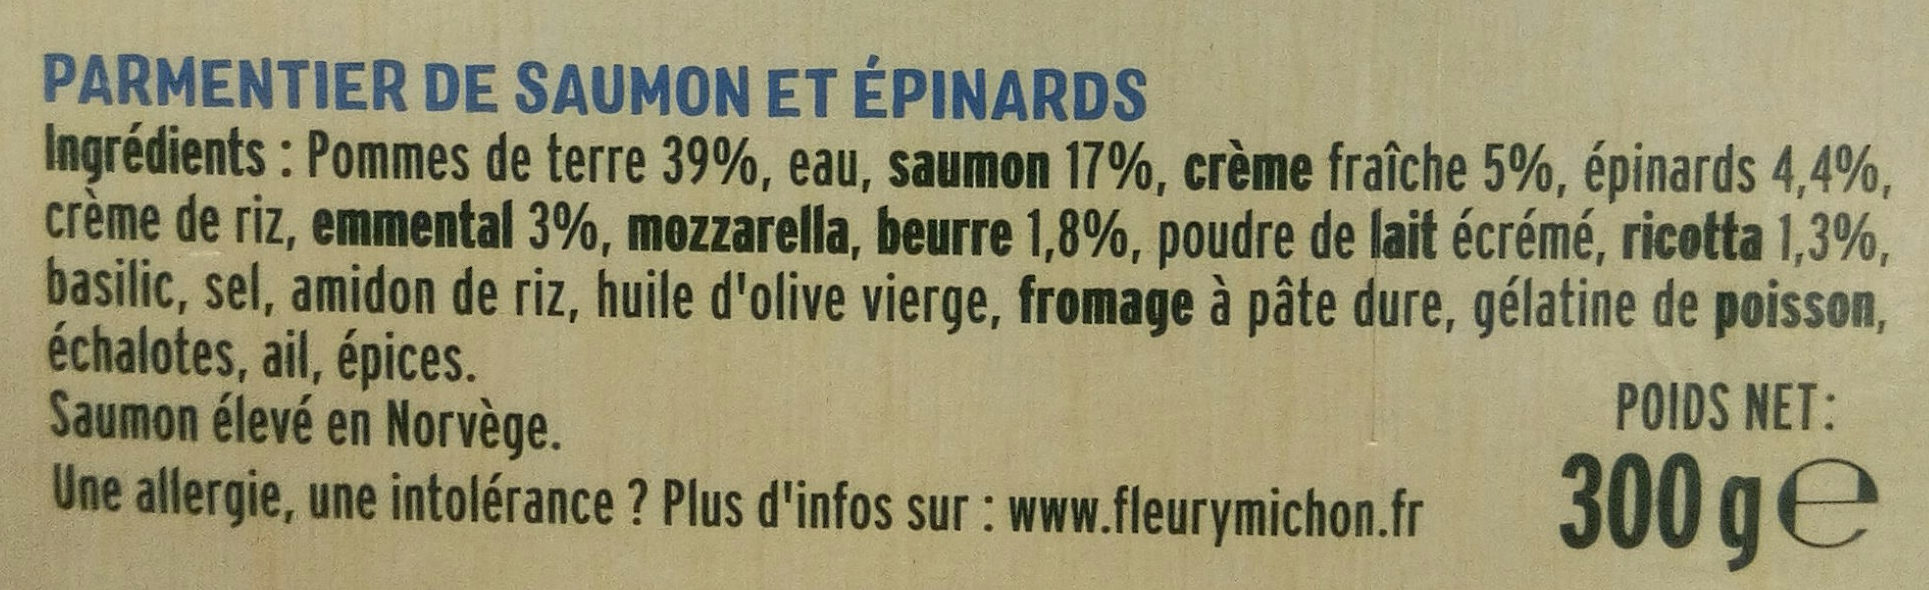 Le Parmentier de Saumon sauce ricotta épinards - Ingredients - fr